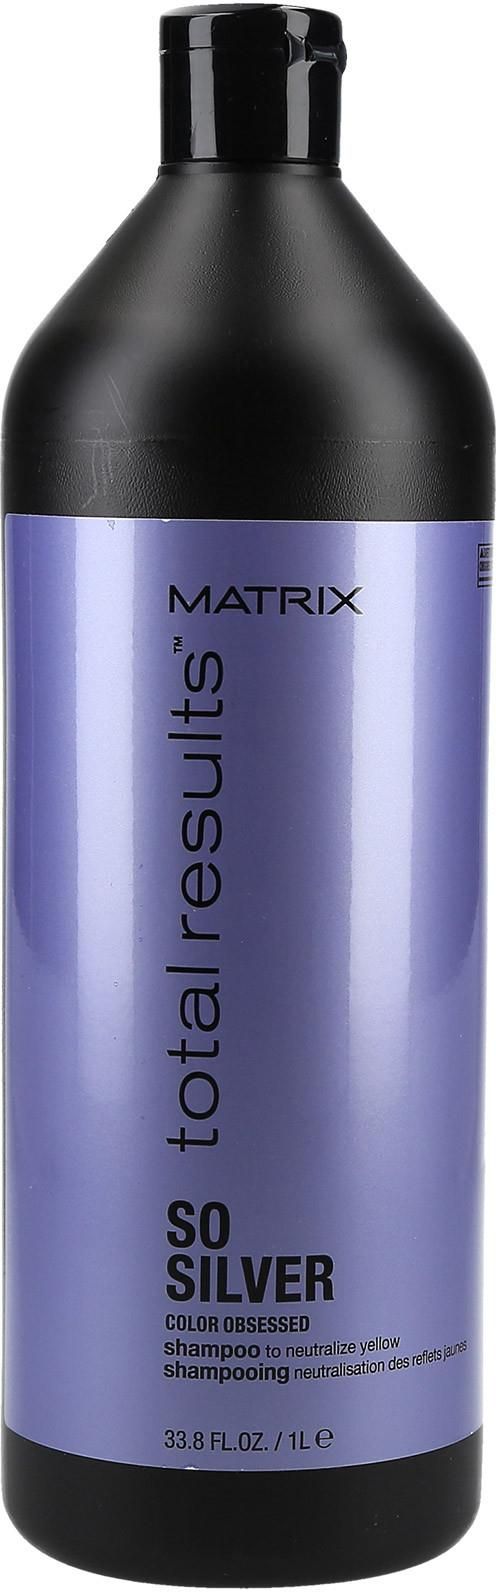 szampon matrix przeciw zółtym wlosom